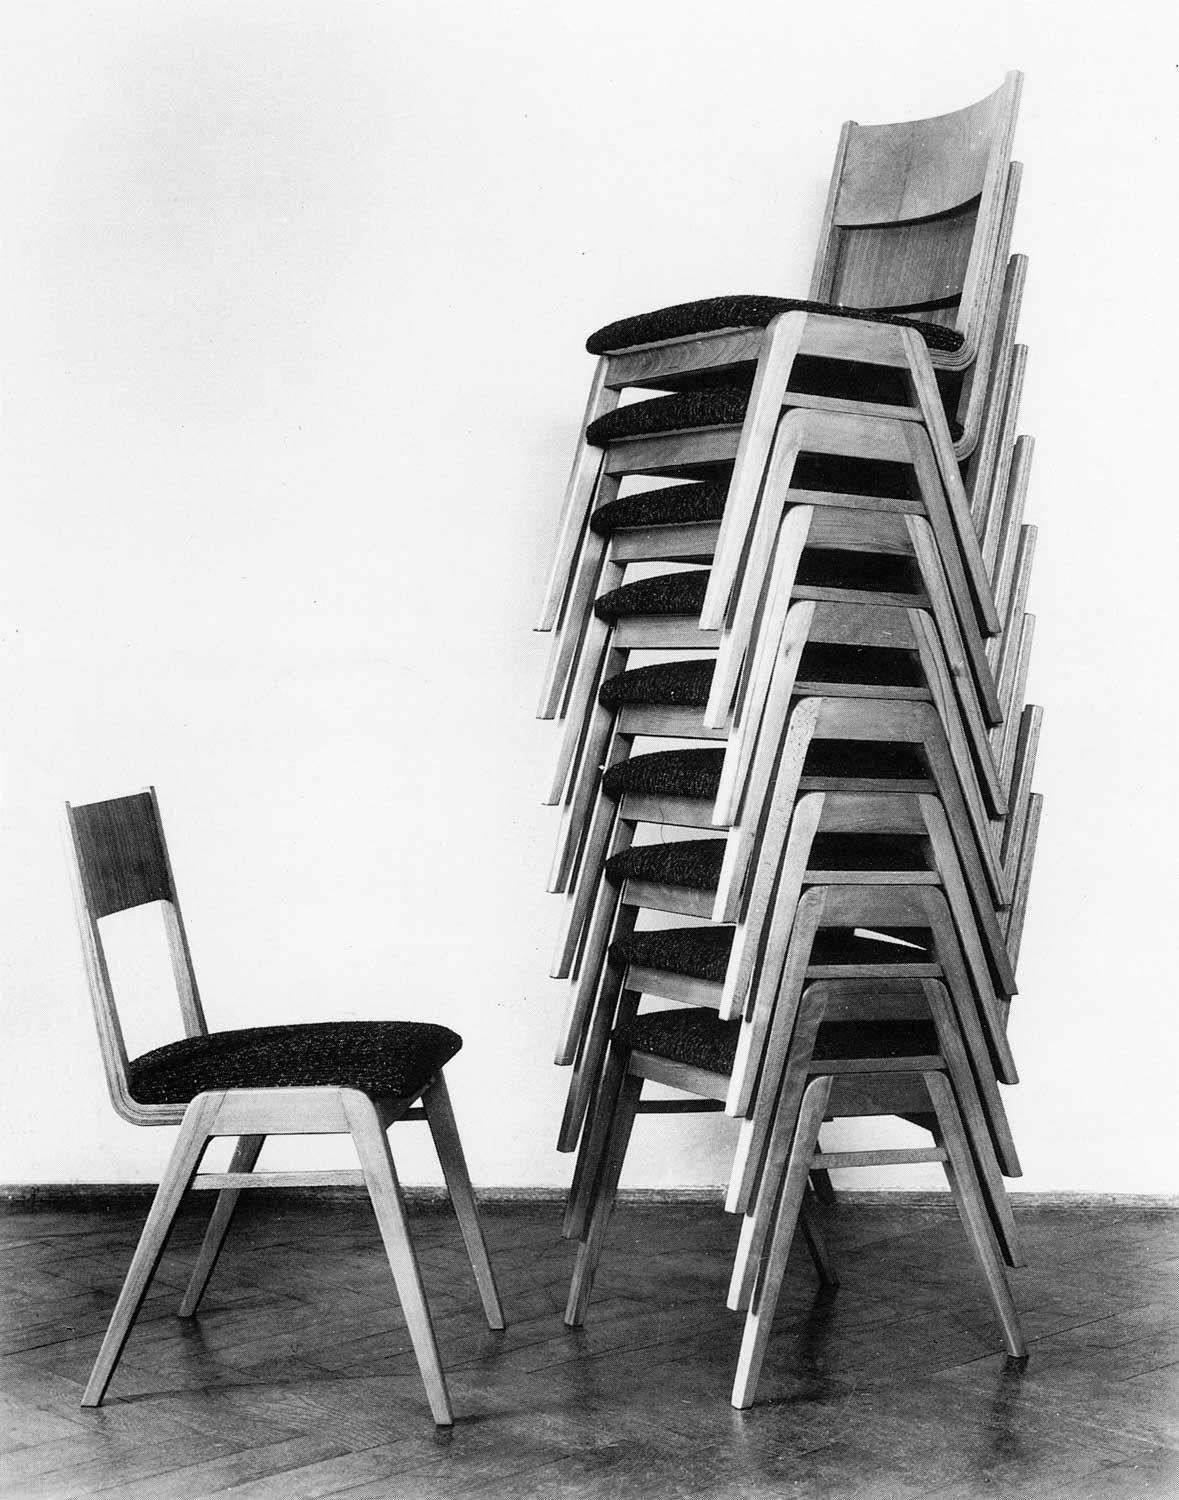 Foto, schwarz-weiß: Links ein einzelner Stuhl, rechts ein Turm aus neun ineinander gestapelten Stühlen.